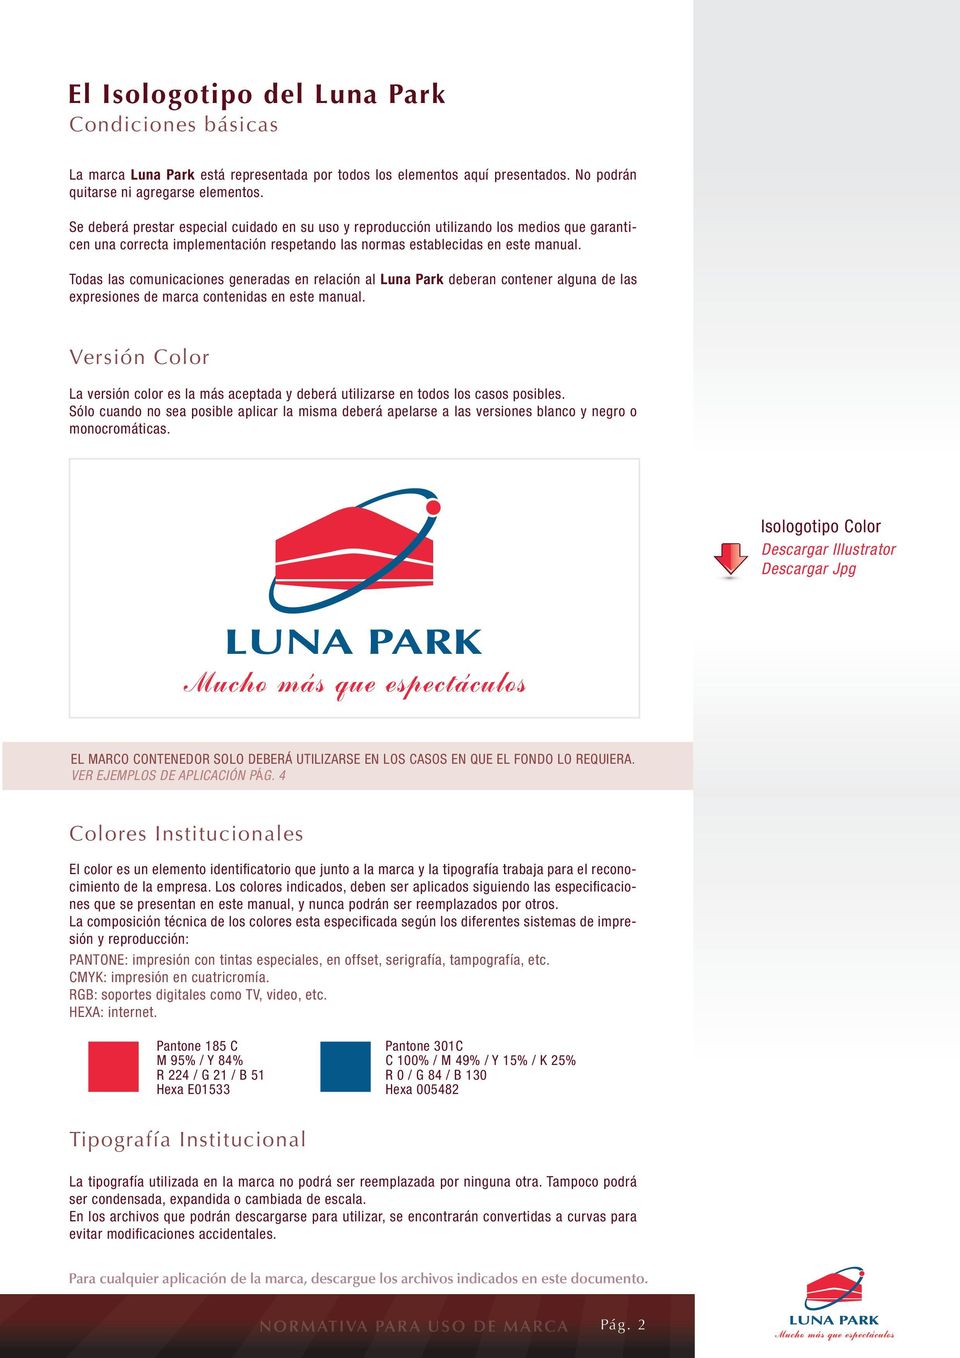 Todas las comunicaciones generadas en relación al Luna Park deberan contener alguna de las expresiones de marca contenidas en este manual.